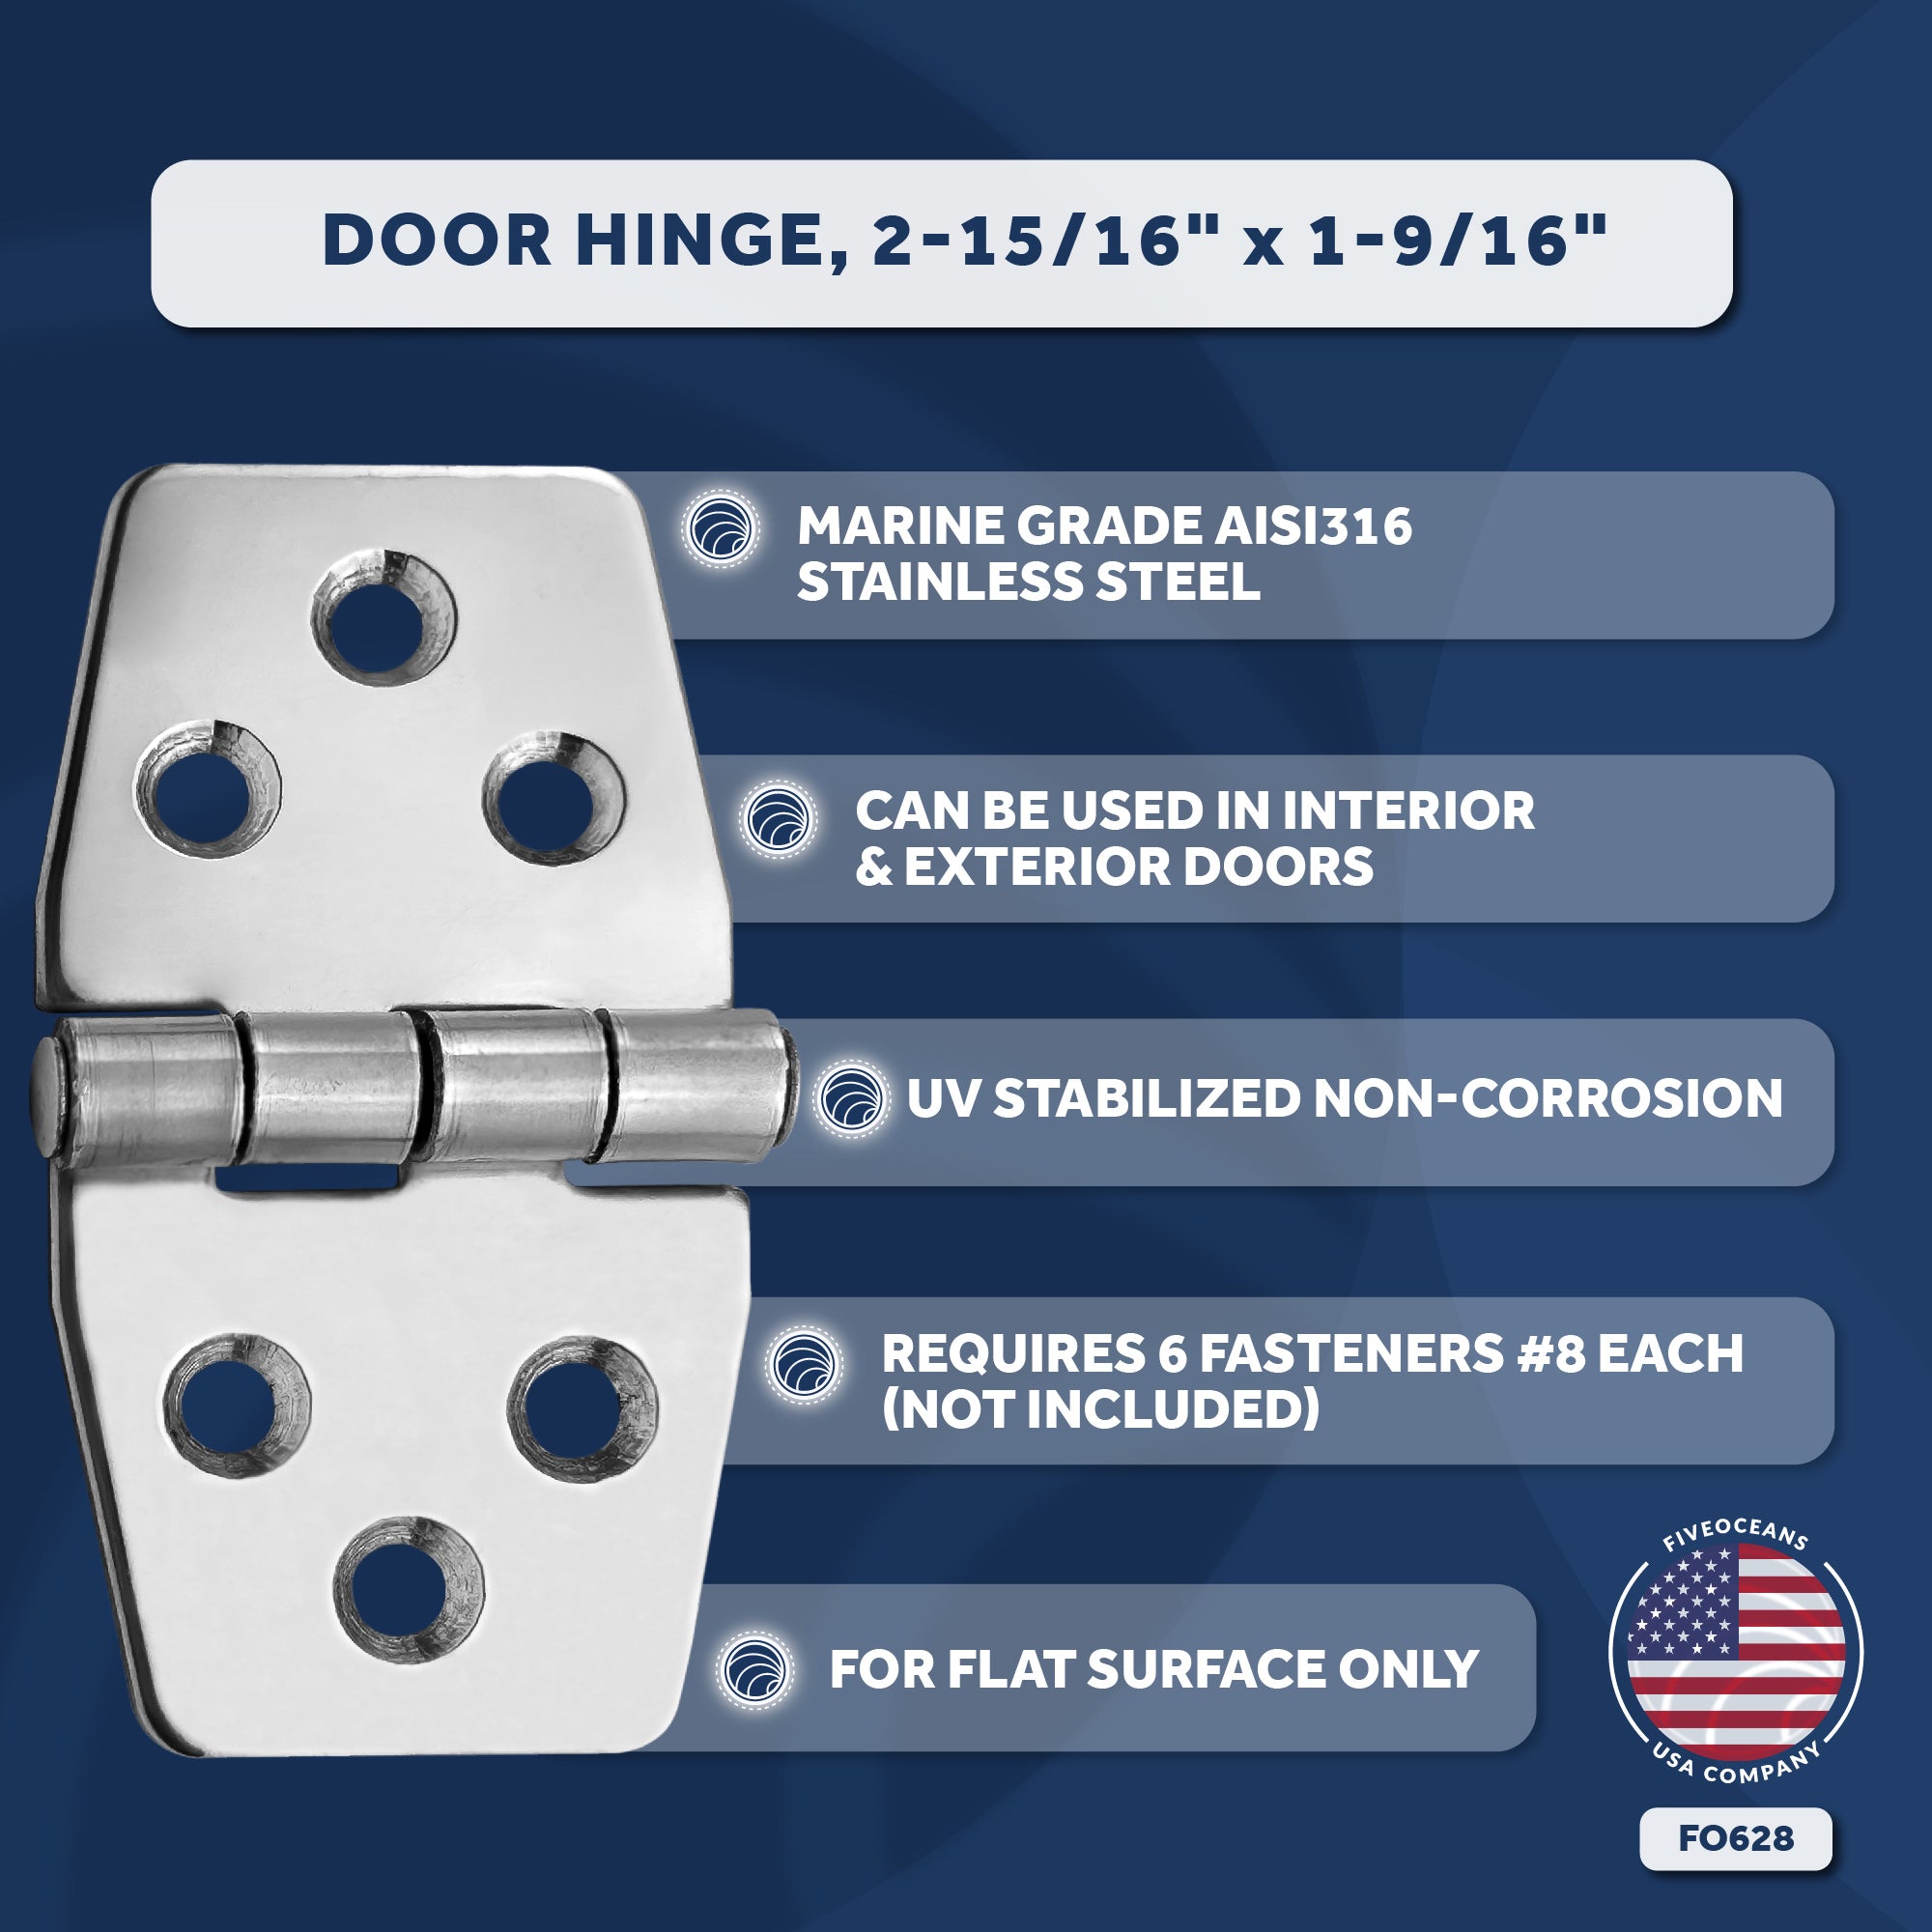 Door Hinge, 3" x 1-9/16", Stainless Steel - FO628